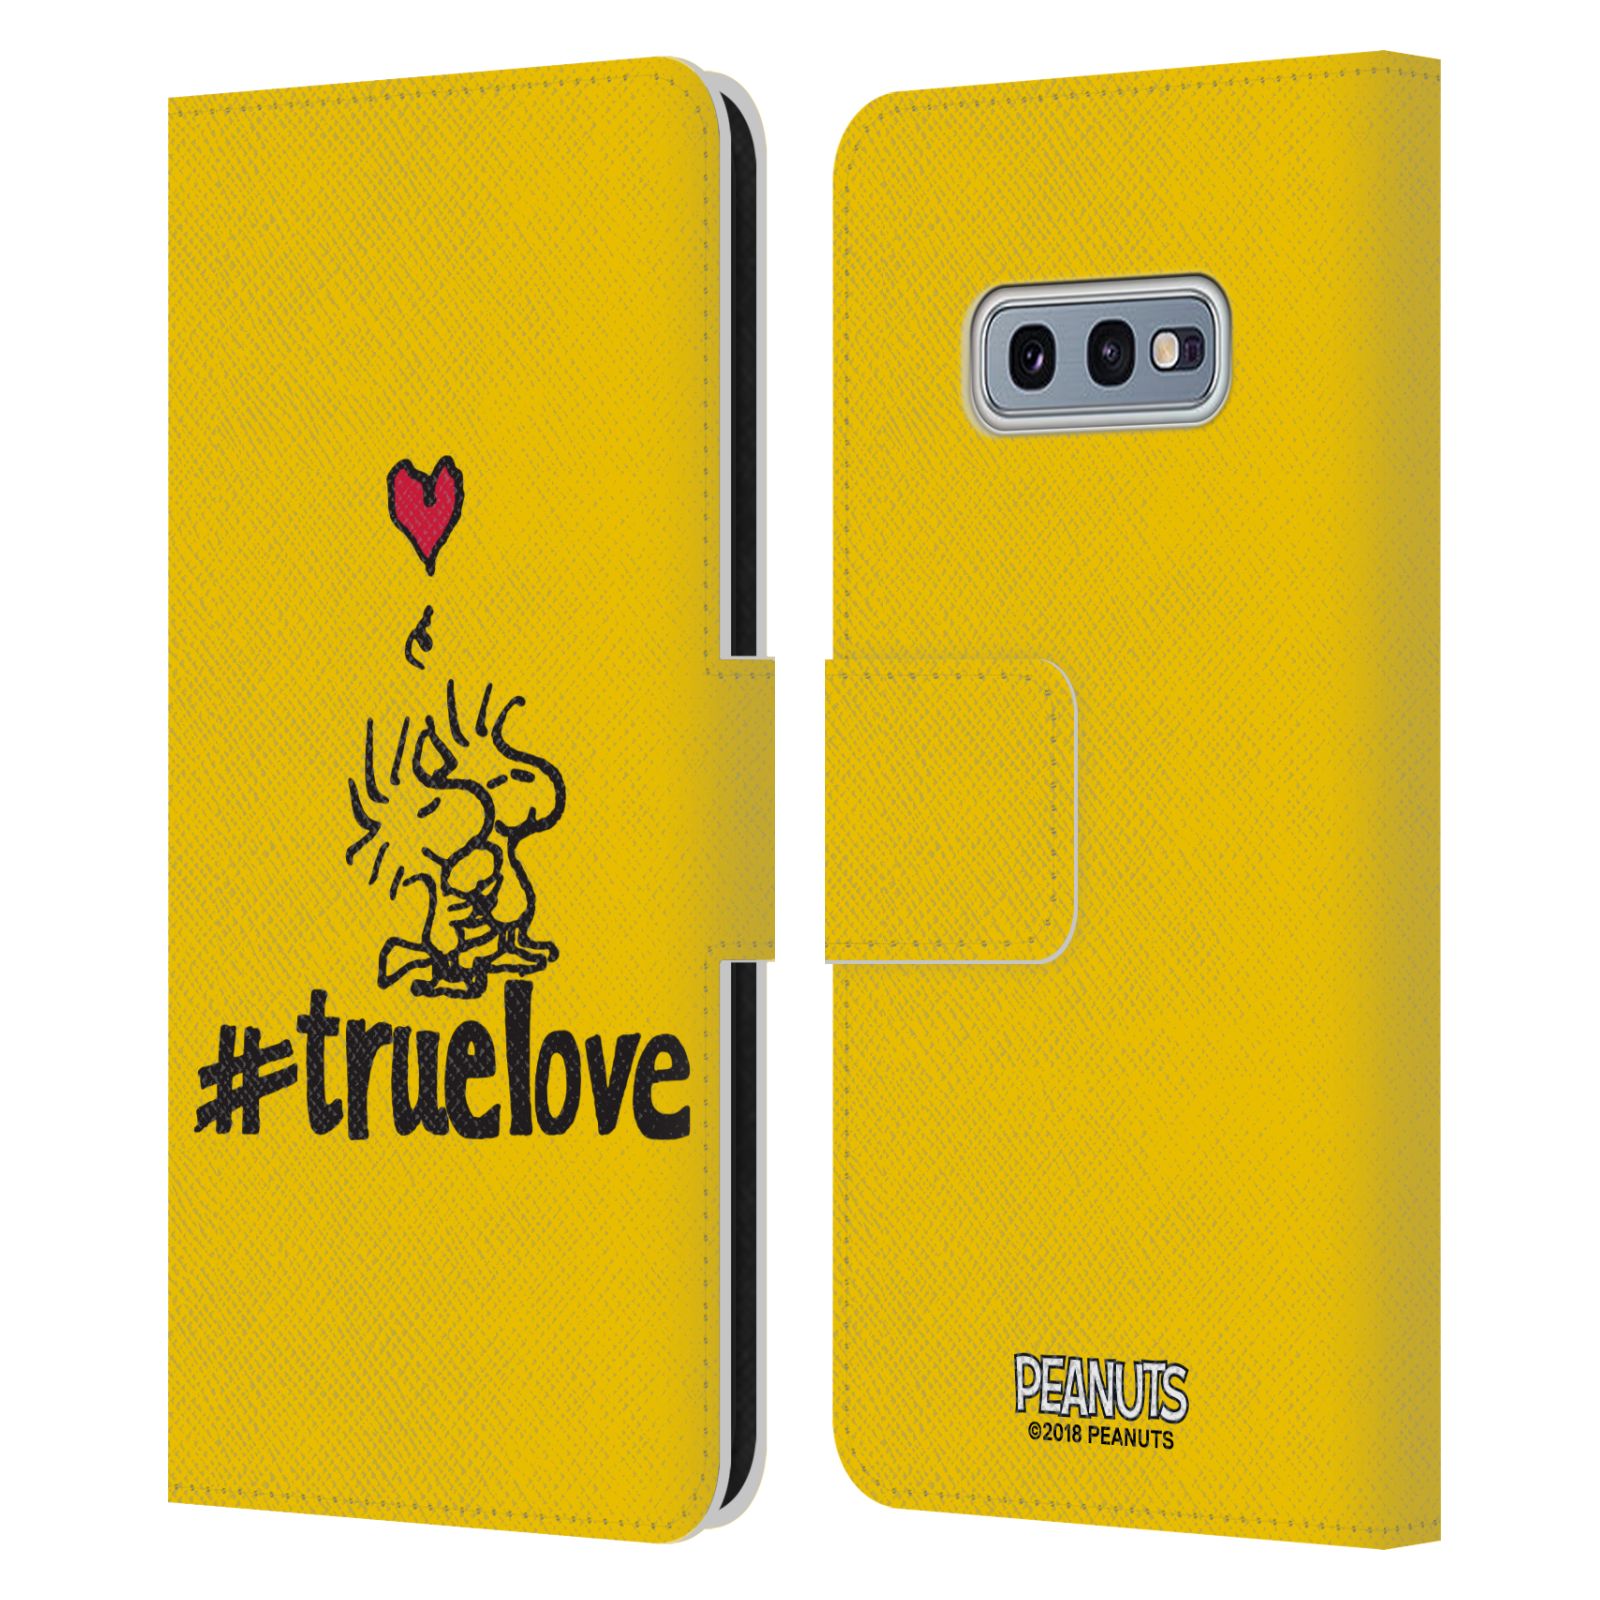 Pouzdro na mobil Samsung Galaxy S10e  - HEAD CASE - Peanuts - Woodstock pravá láska